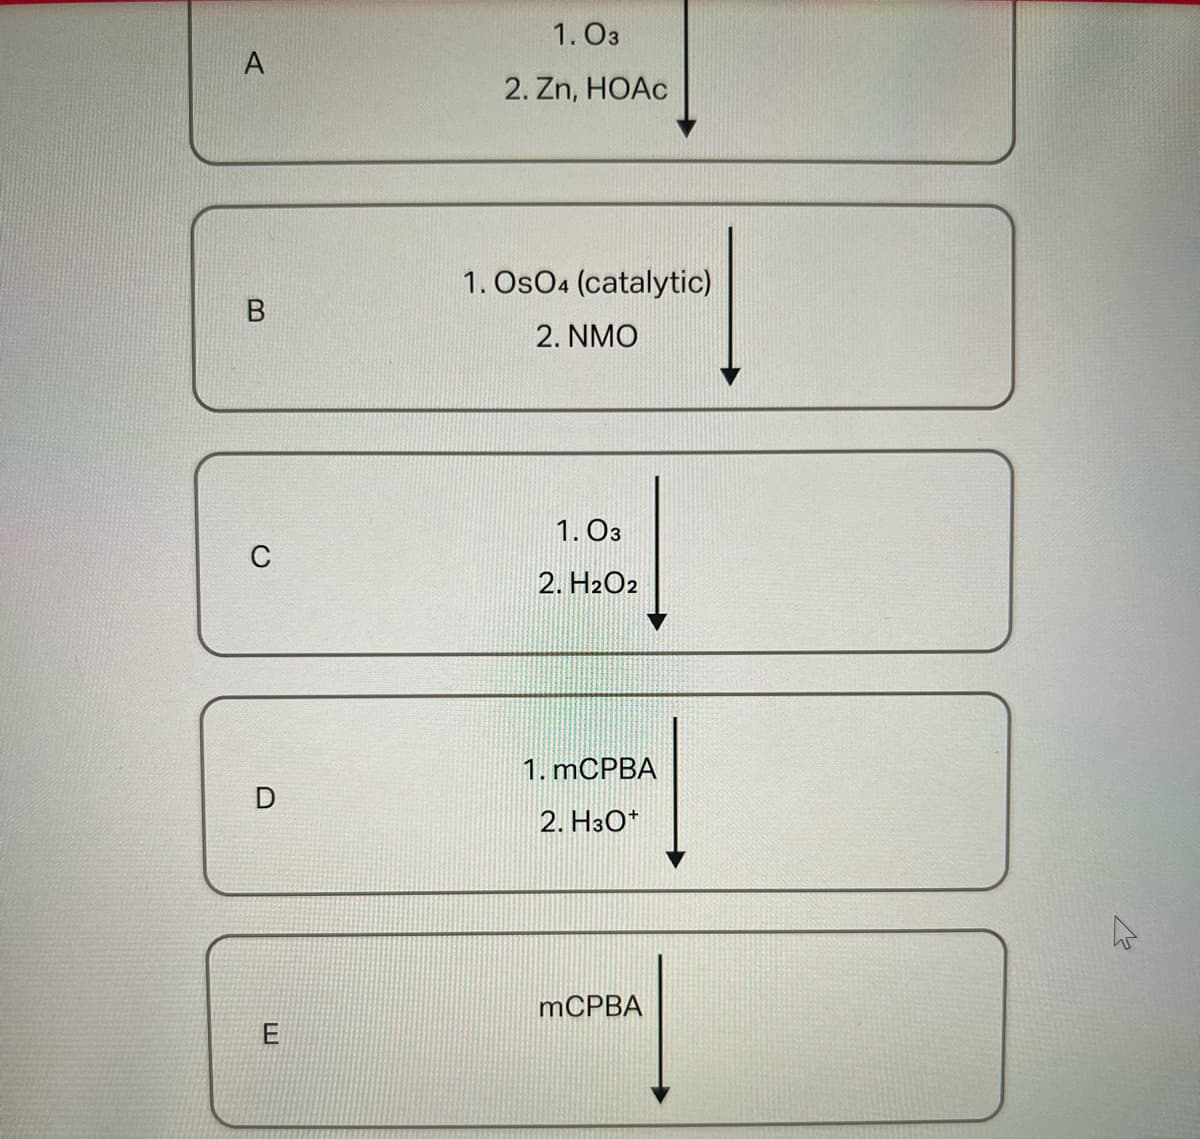 A
m
C
D
E
1.03
2. Zn, HOAc
1. OsO4 (catalytic)
2. NMO
1.03
2. H2O2
1. mCPBA
2. H3O+
mCPBA